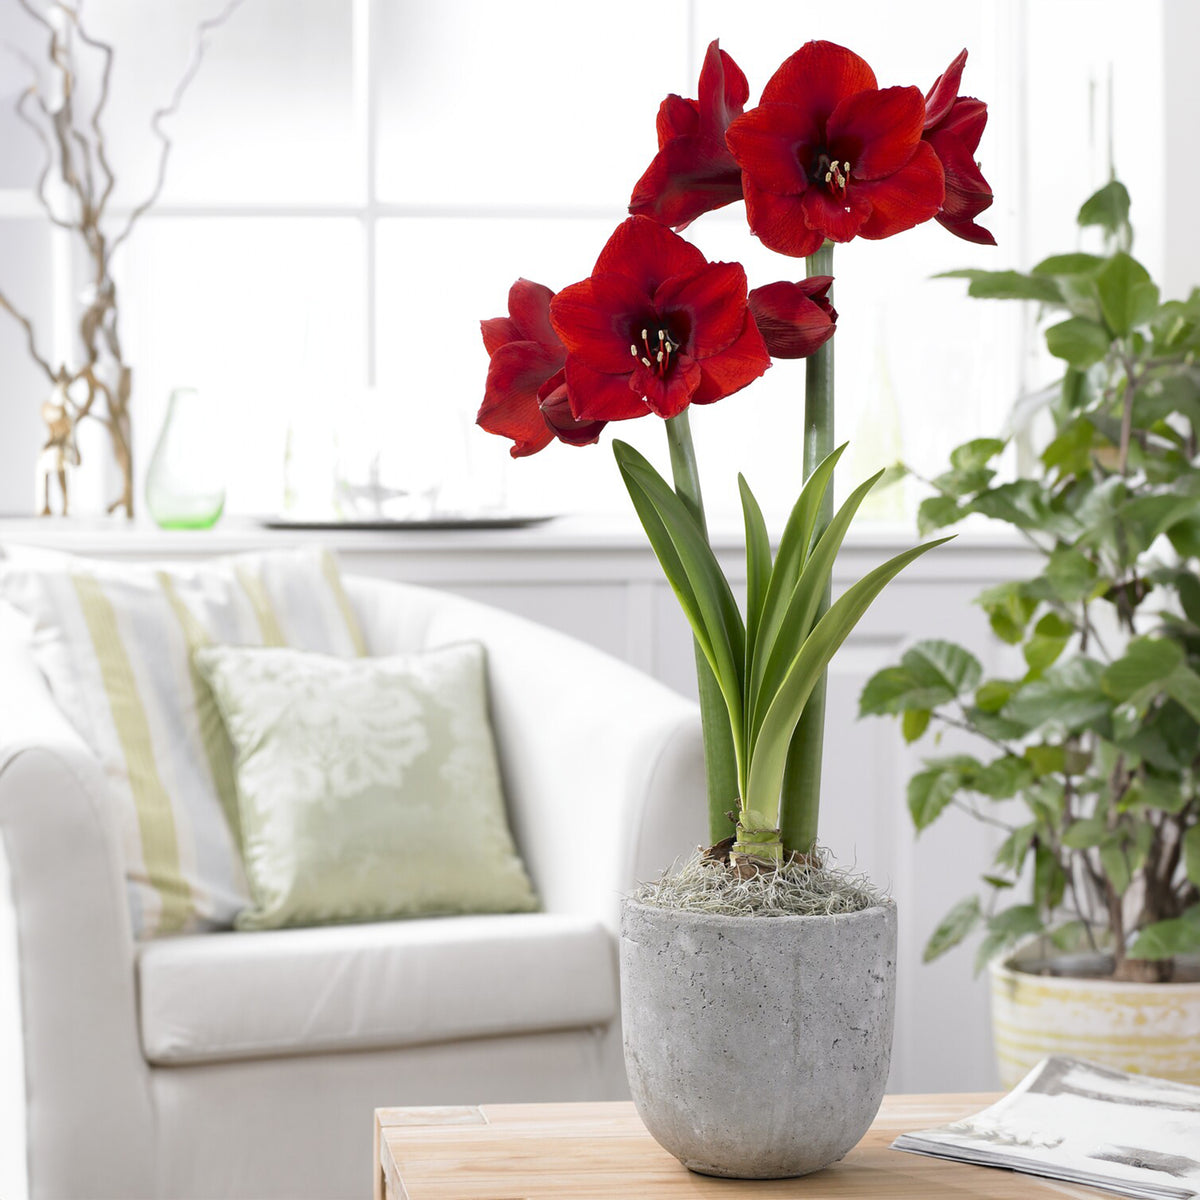 Amaryllis rouge - Amaryllis red lion - Plantes d'intérieur